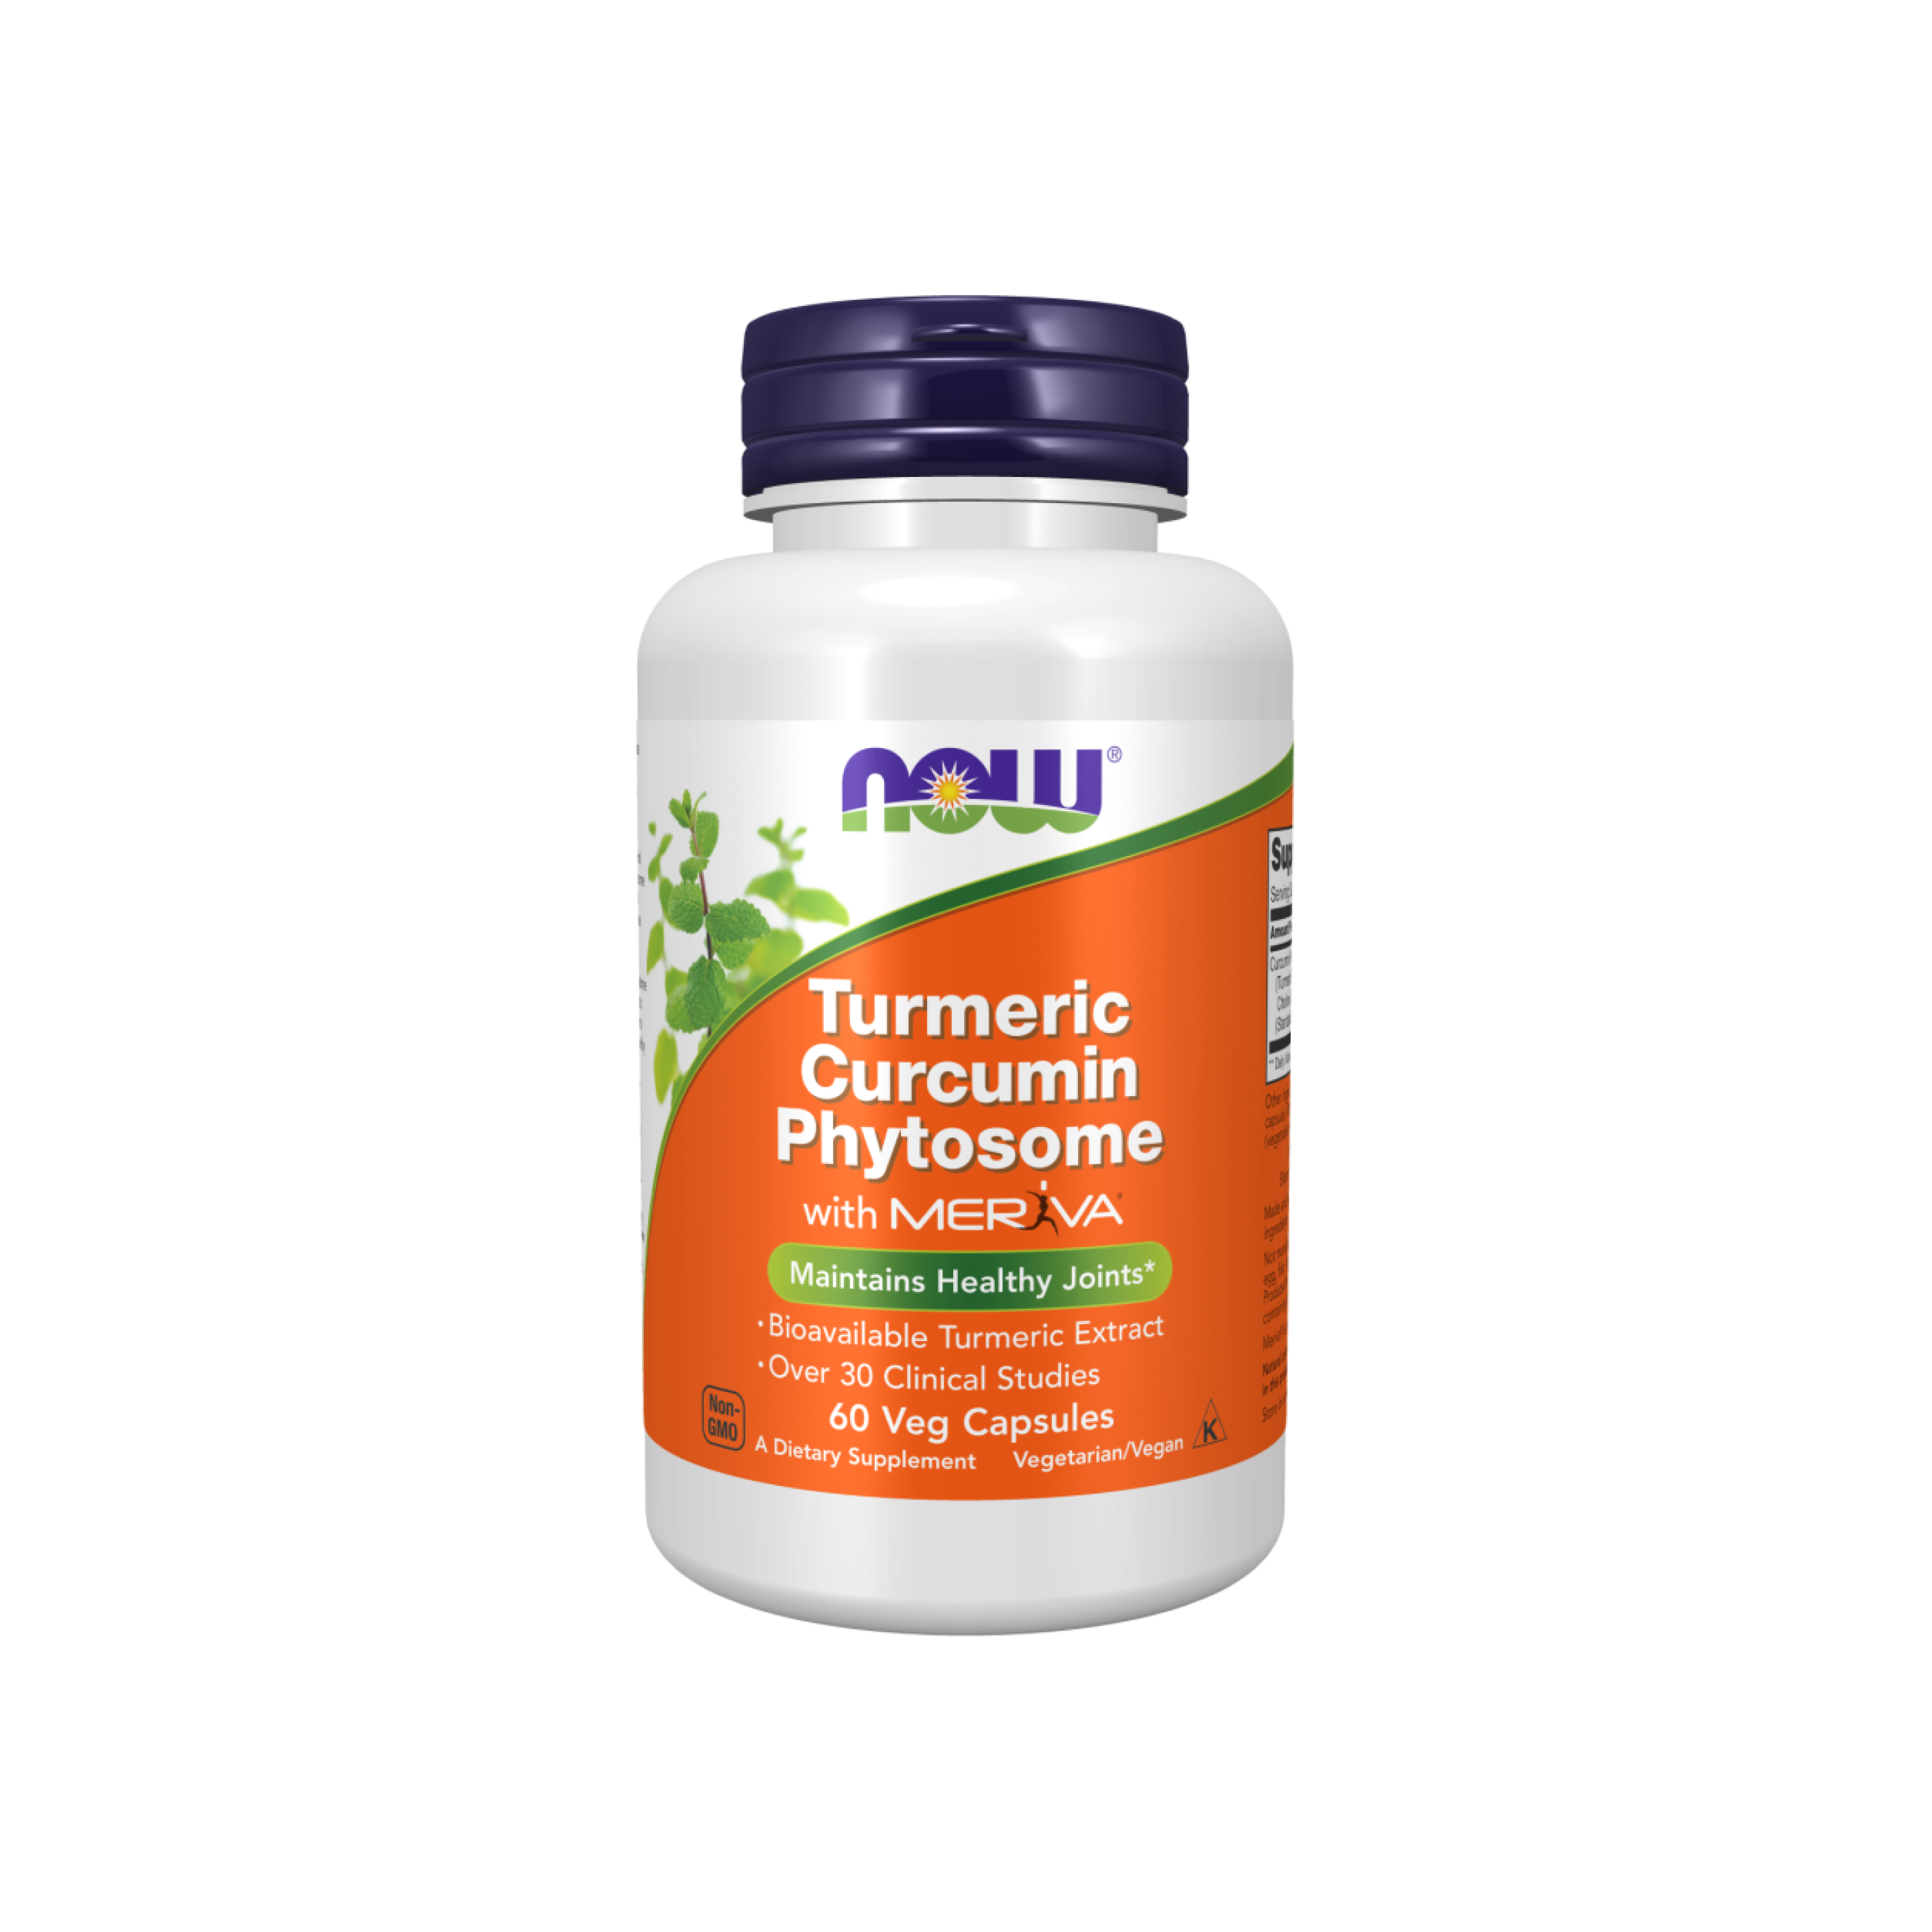 Curcumin Phytosome 500 mg